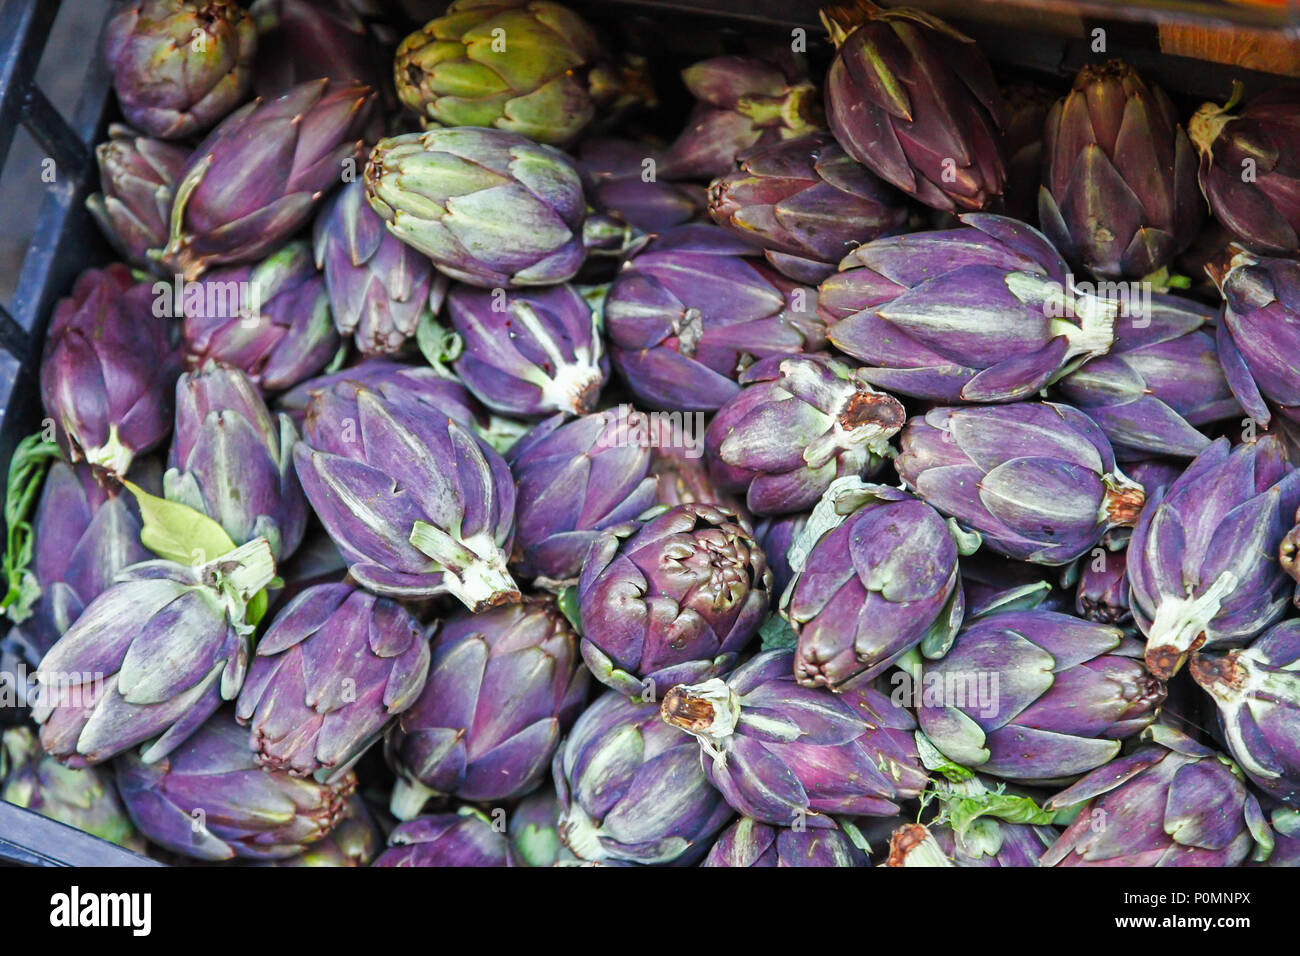 Fiesole carciofi in vendita in un mercato di Sorrento, che sono un bambino speciale varietà di carciofo con un ricco di colore viola Foto Stock